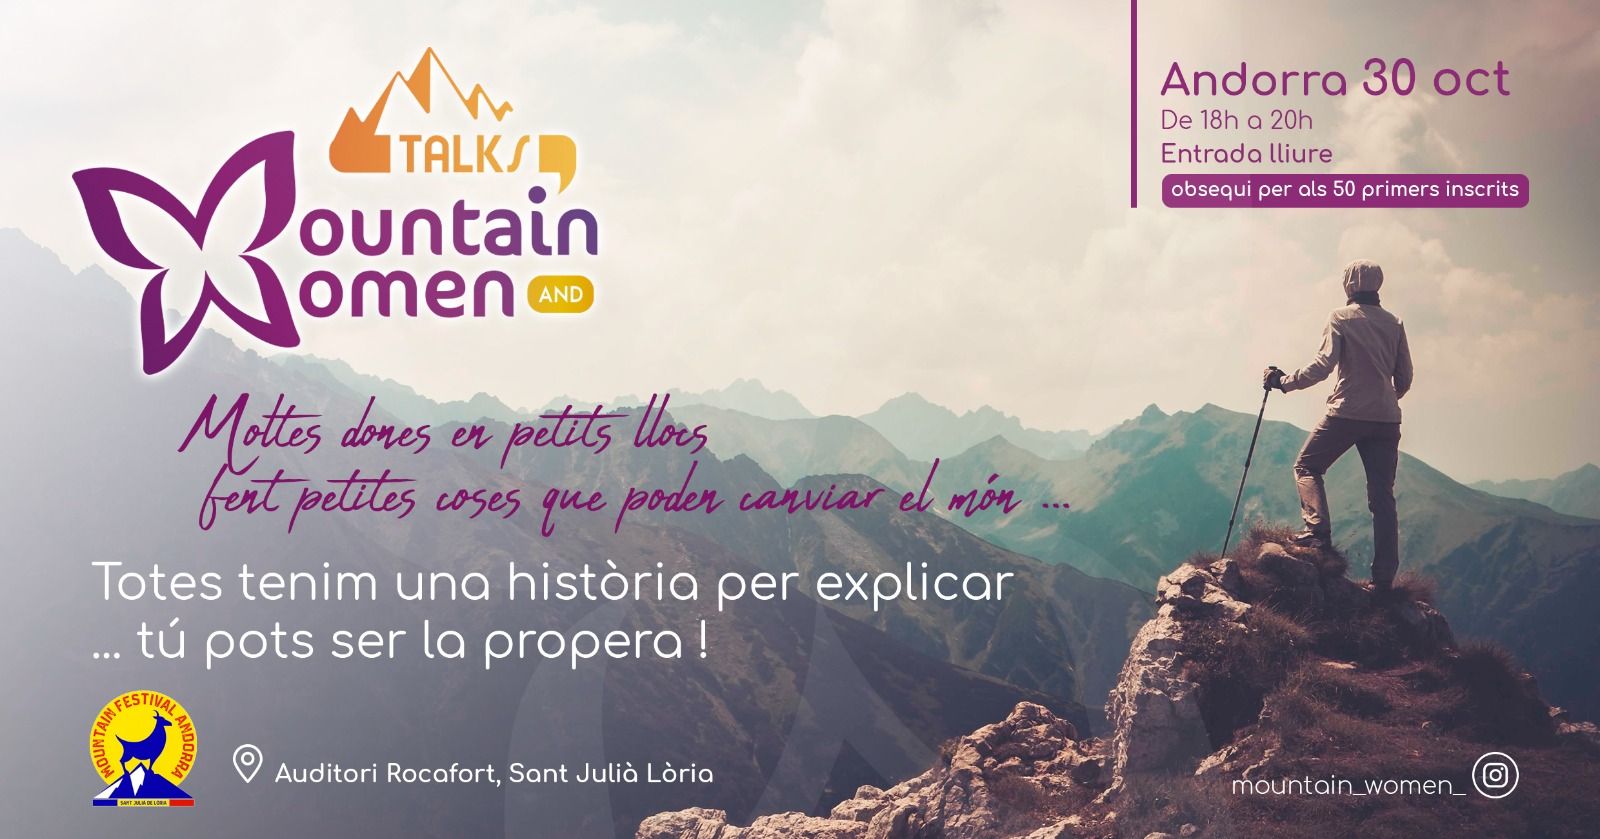 El Mountain Festival Andorra pone el foco en el papel de la mujer en el deporte